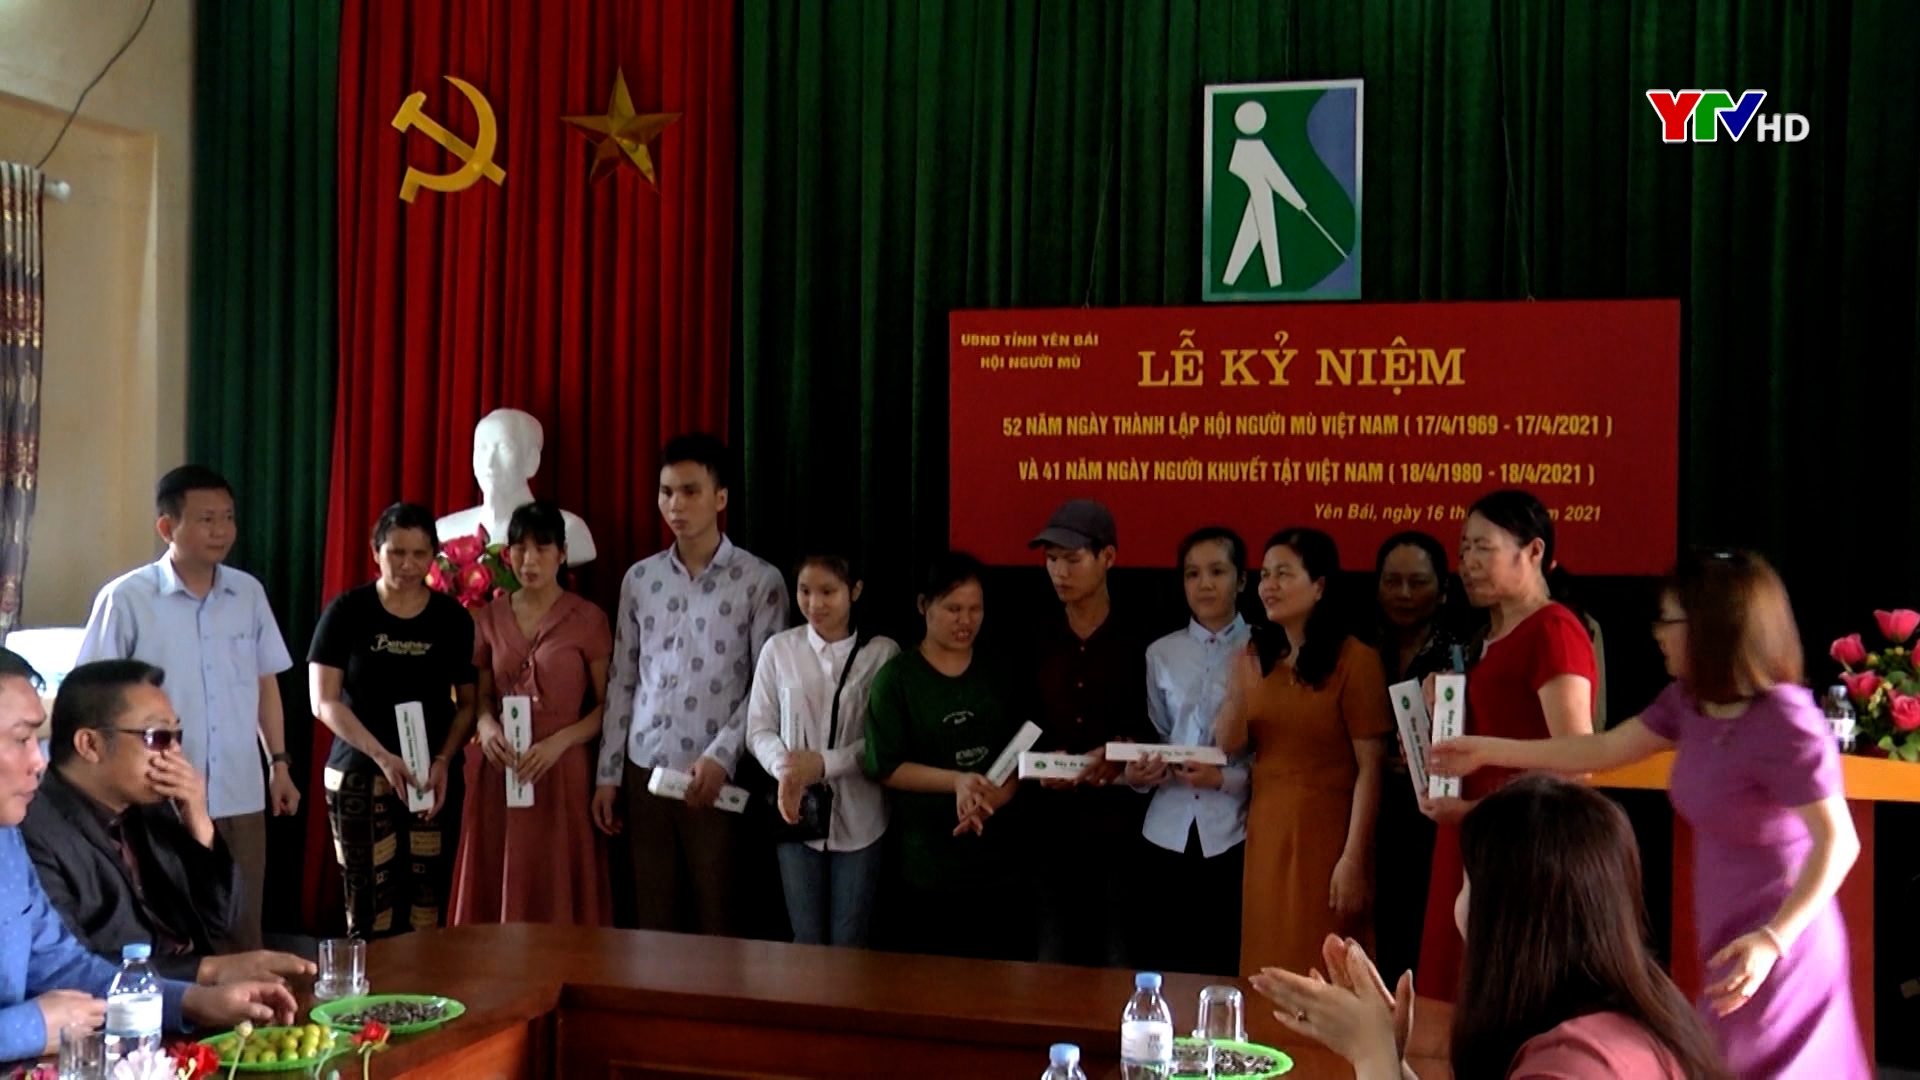 Kỷ niệm 52 năm ngày thành lập Hội người mù Việt Nam